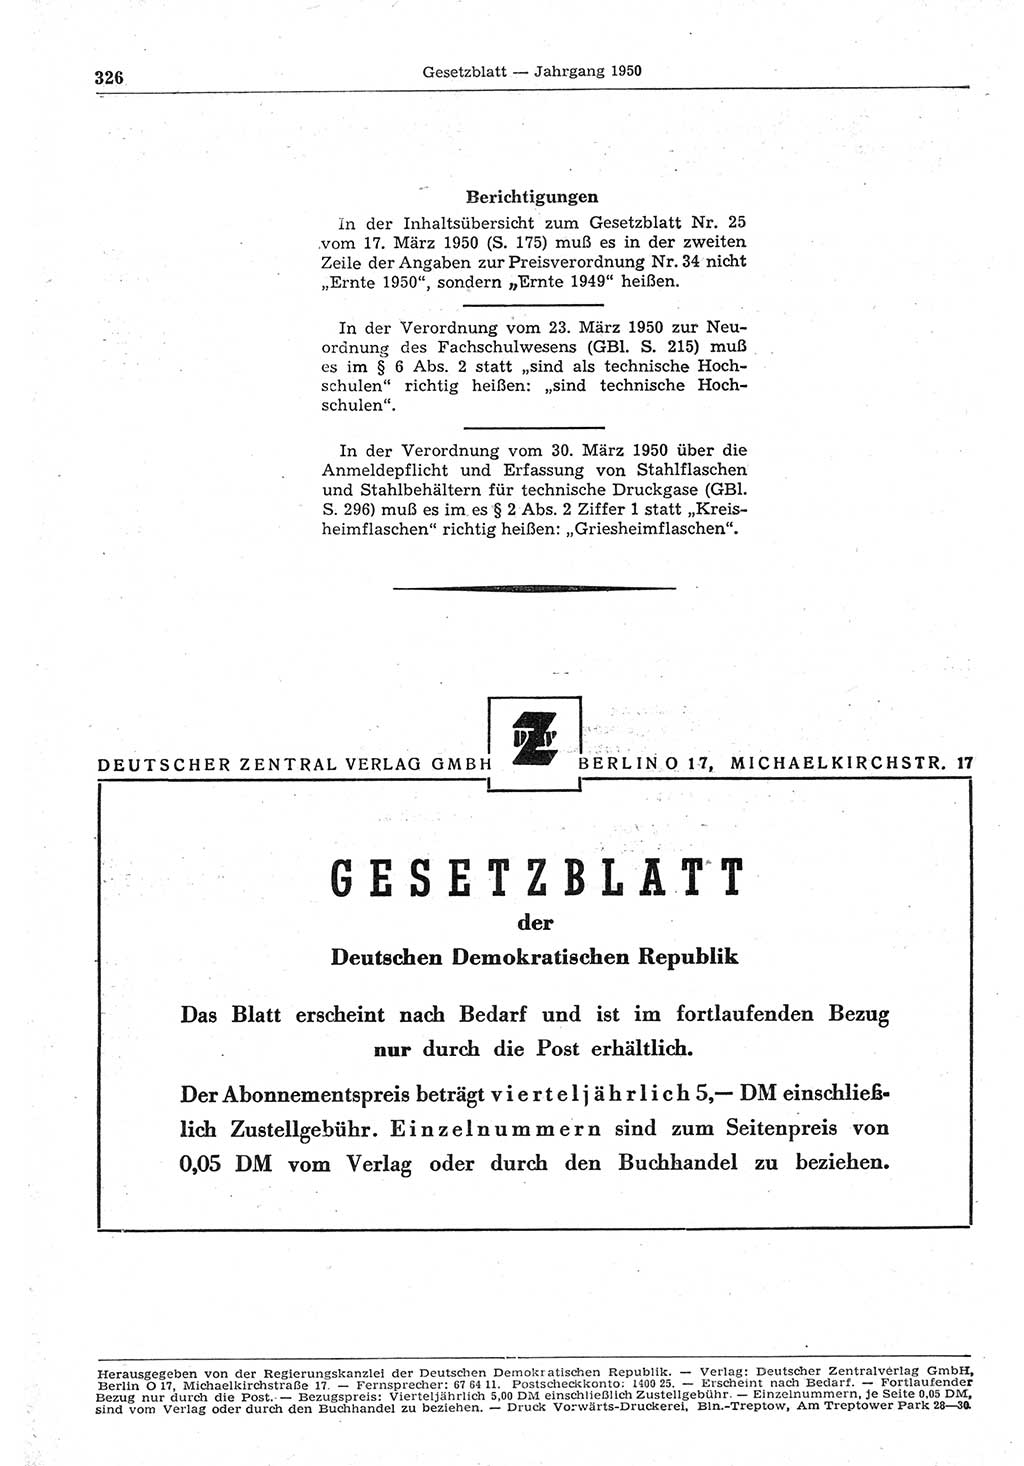 Gesetzblatt (GBl.) der Deutschen Demokratischen Republik (DDR) 1950, Seite 326 (GBl. DDR 1950, S. 326)